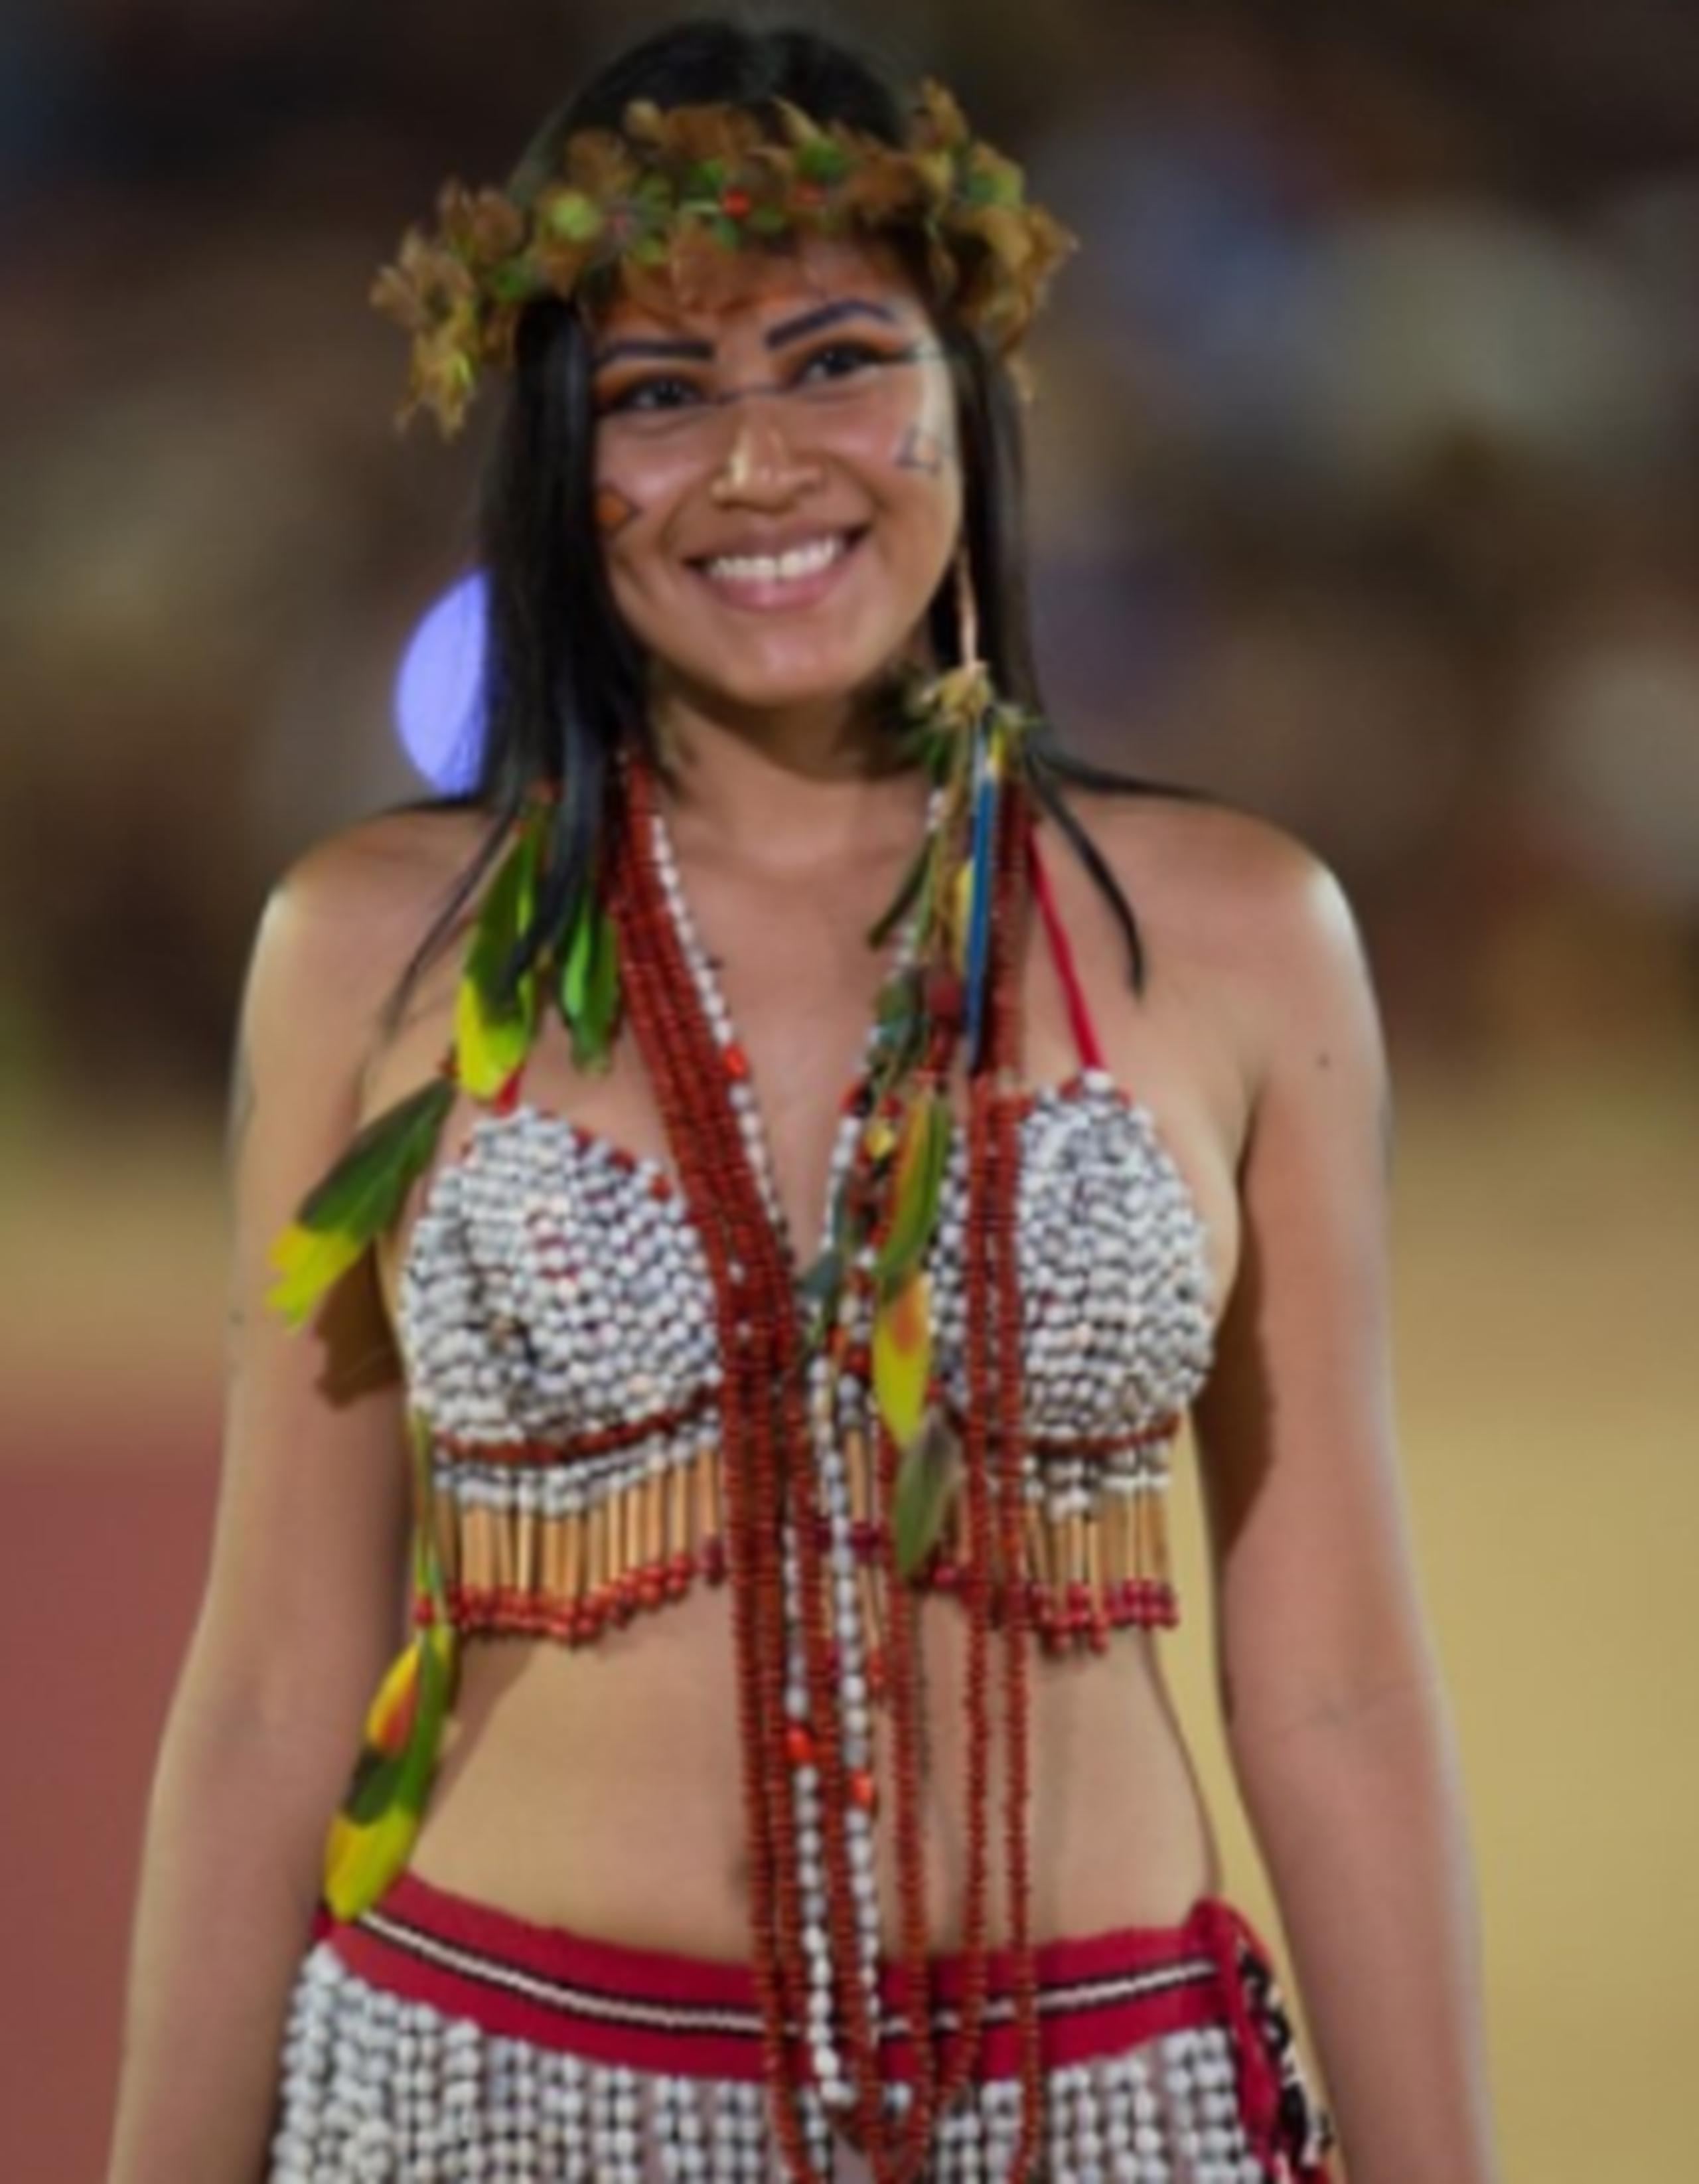 Una de las "guerreras" participantes del desfile, parte de los primeros Juegos Mundiales de los Pueblos Indígenas. (AFP)